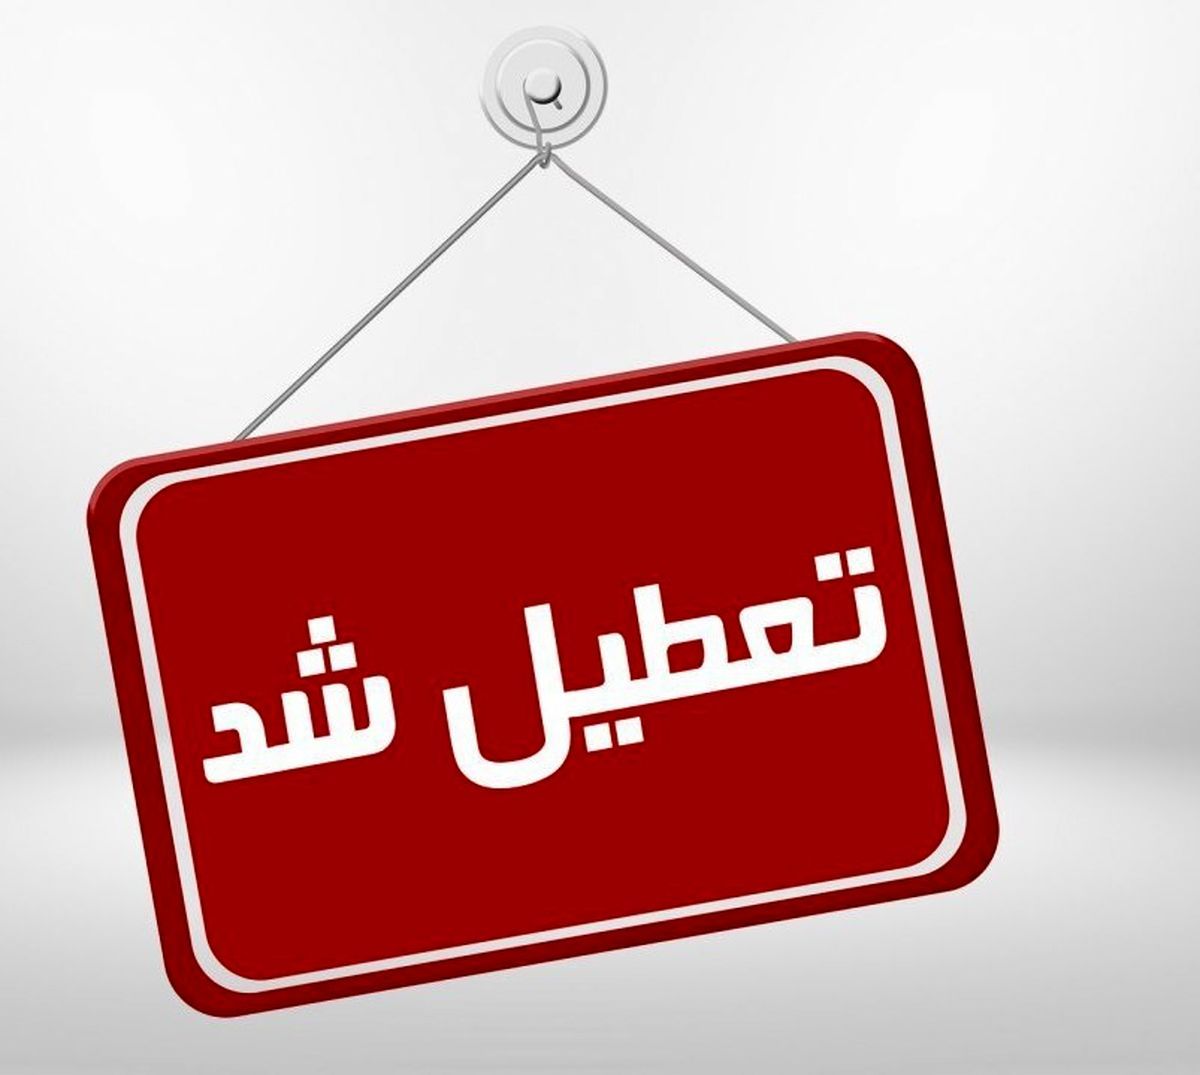 به دنبال شیوع آنفلوآنزا؛ مدارس استان اردبیل 2 روز تعطیل اعلام شد